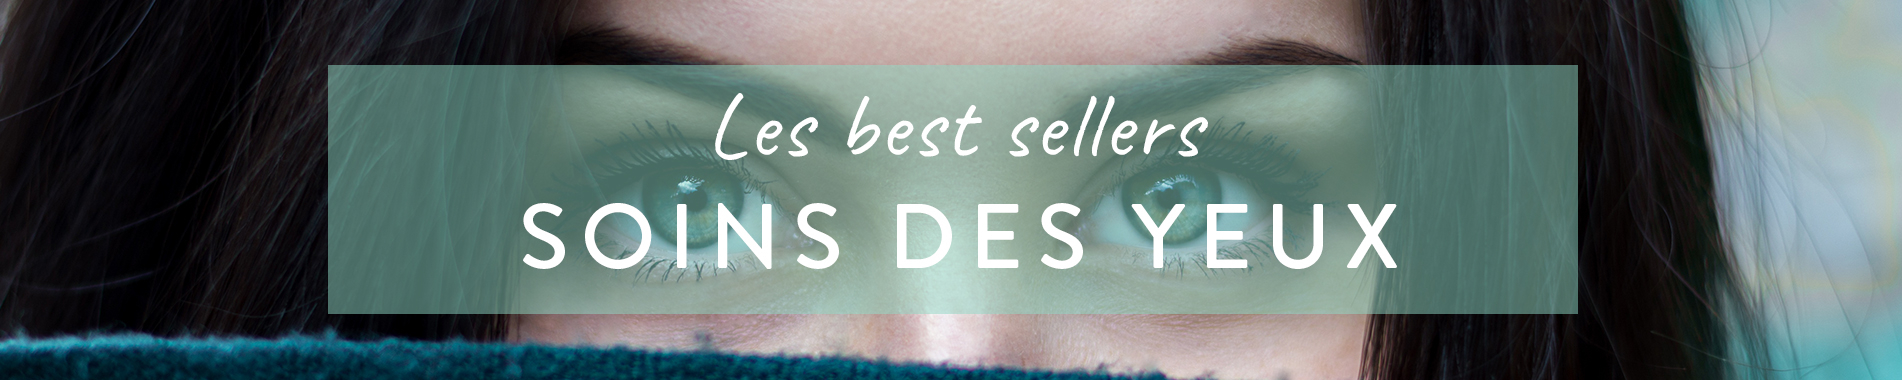 Best sellers  : Les meilleures ventes de soins pour les yeux en parapharmacie